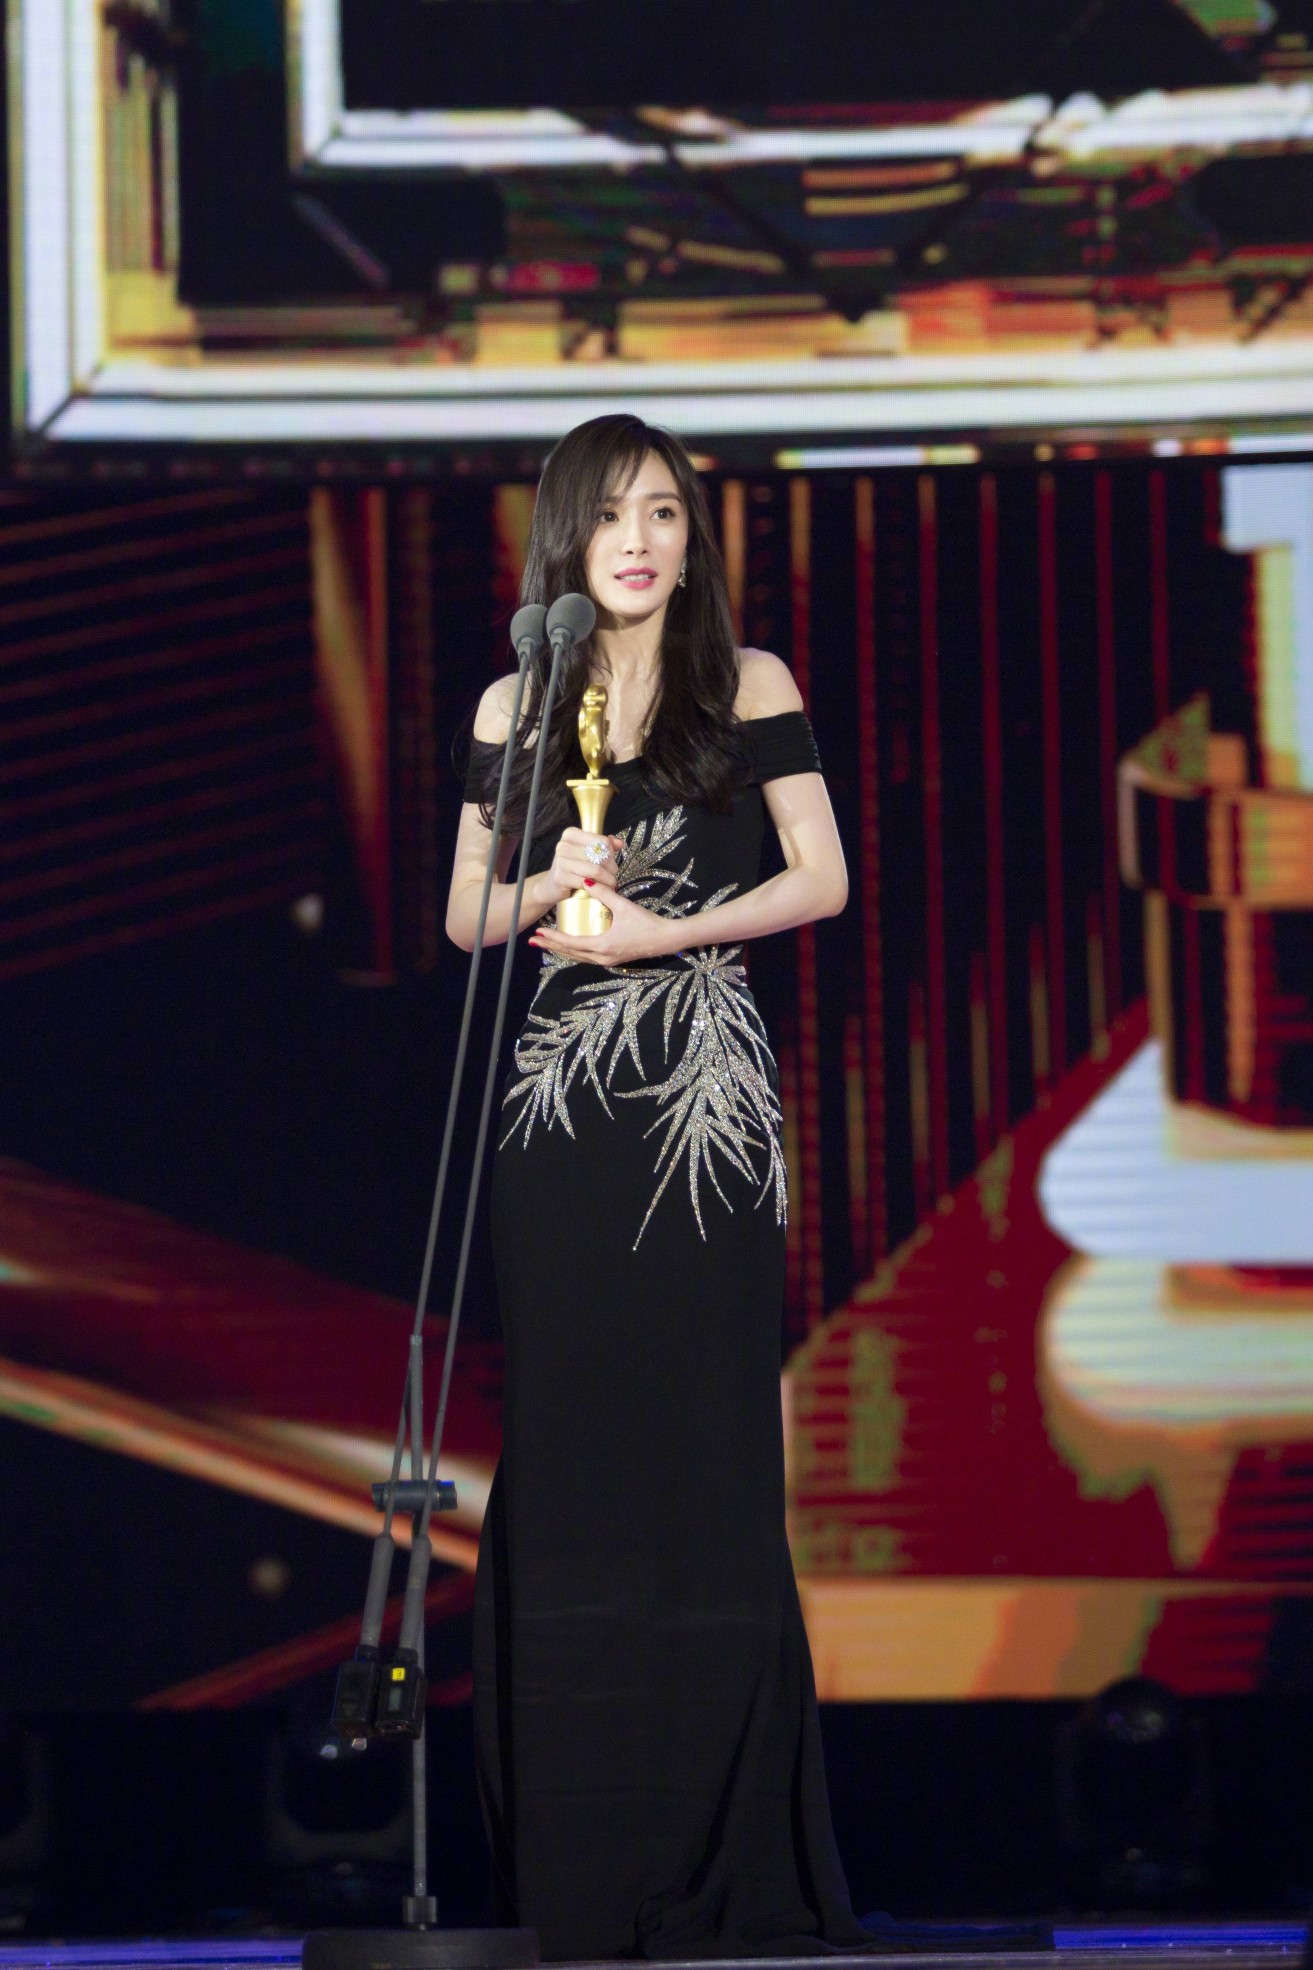 杨幂 第25届北京大学生电影节闭幕式暨颁奖典礼,荣获最受欢迎女演员